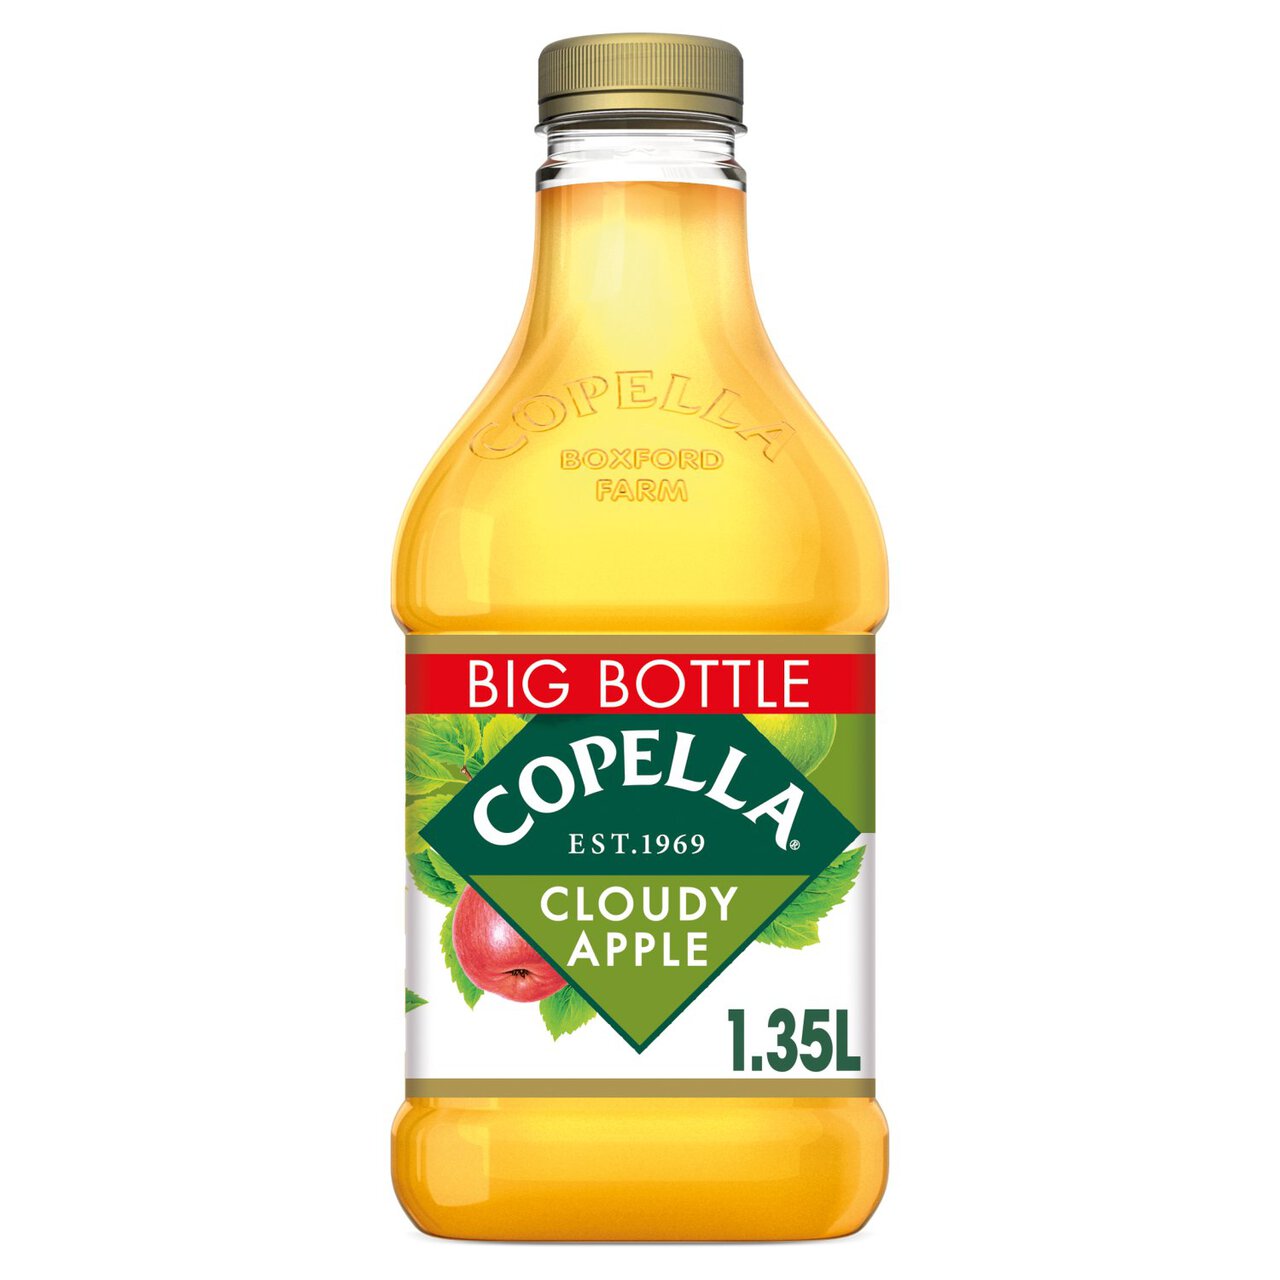 Copella Cloudy Apple Juice 1.35l